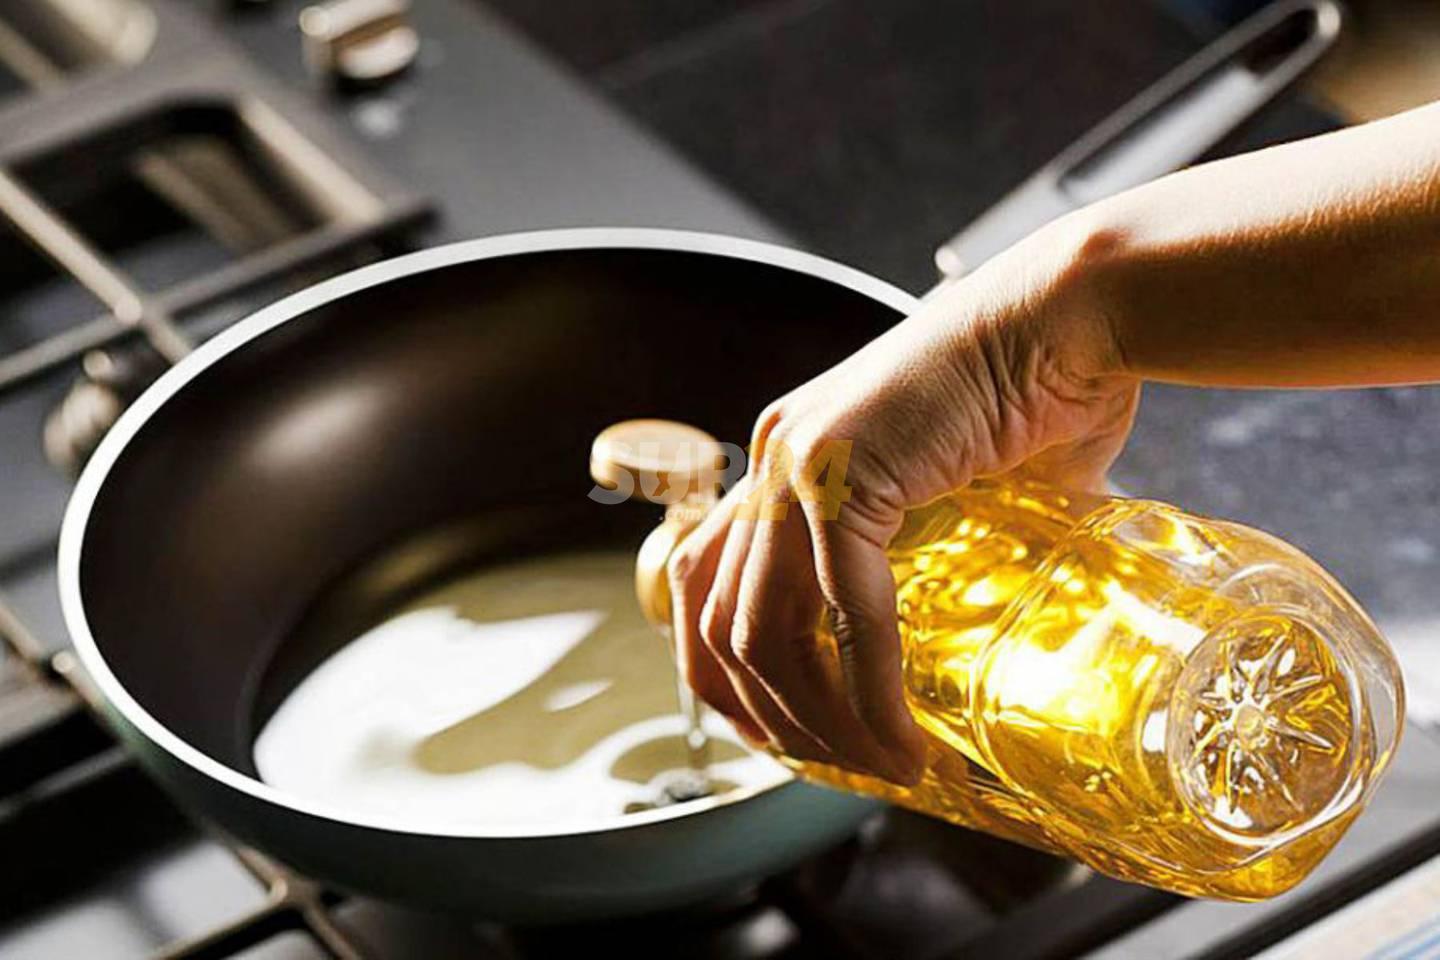 Reciclaje de aceite usado de cocina, una práctica que se expande en el sur provincial 